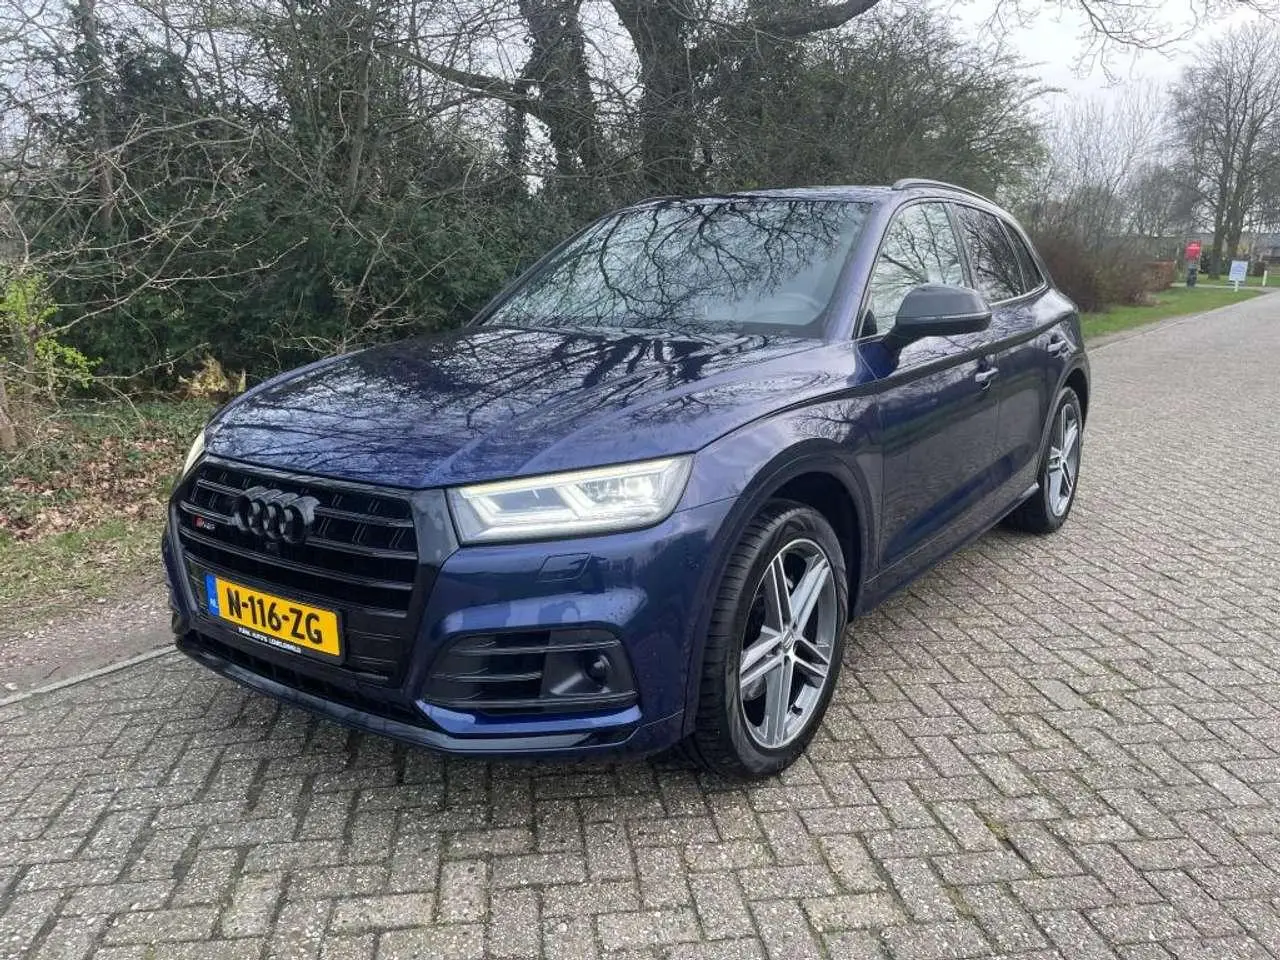 Photo 1 : Audi Sq5 2018 Petrol